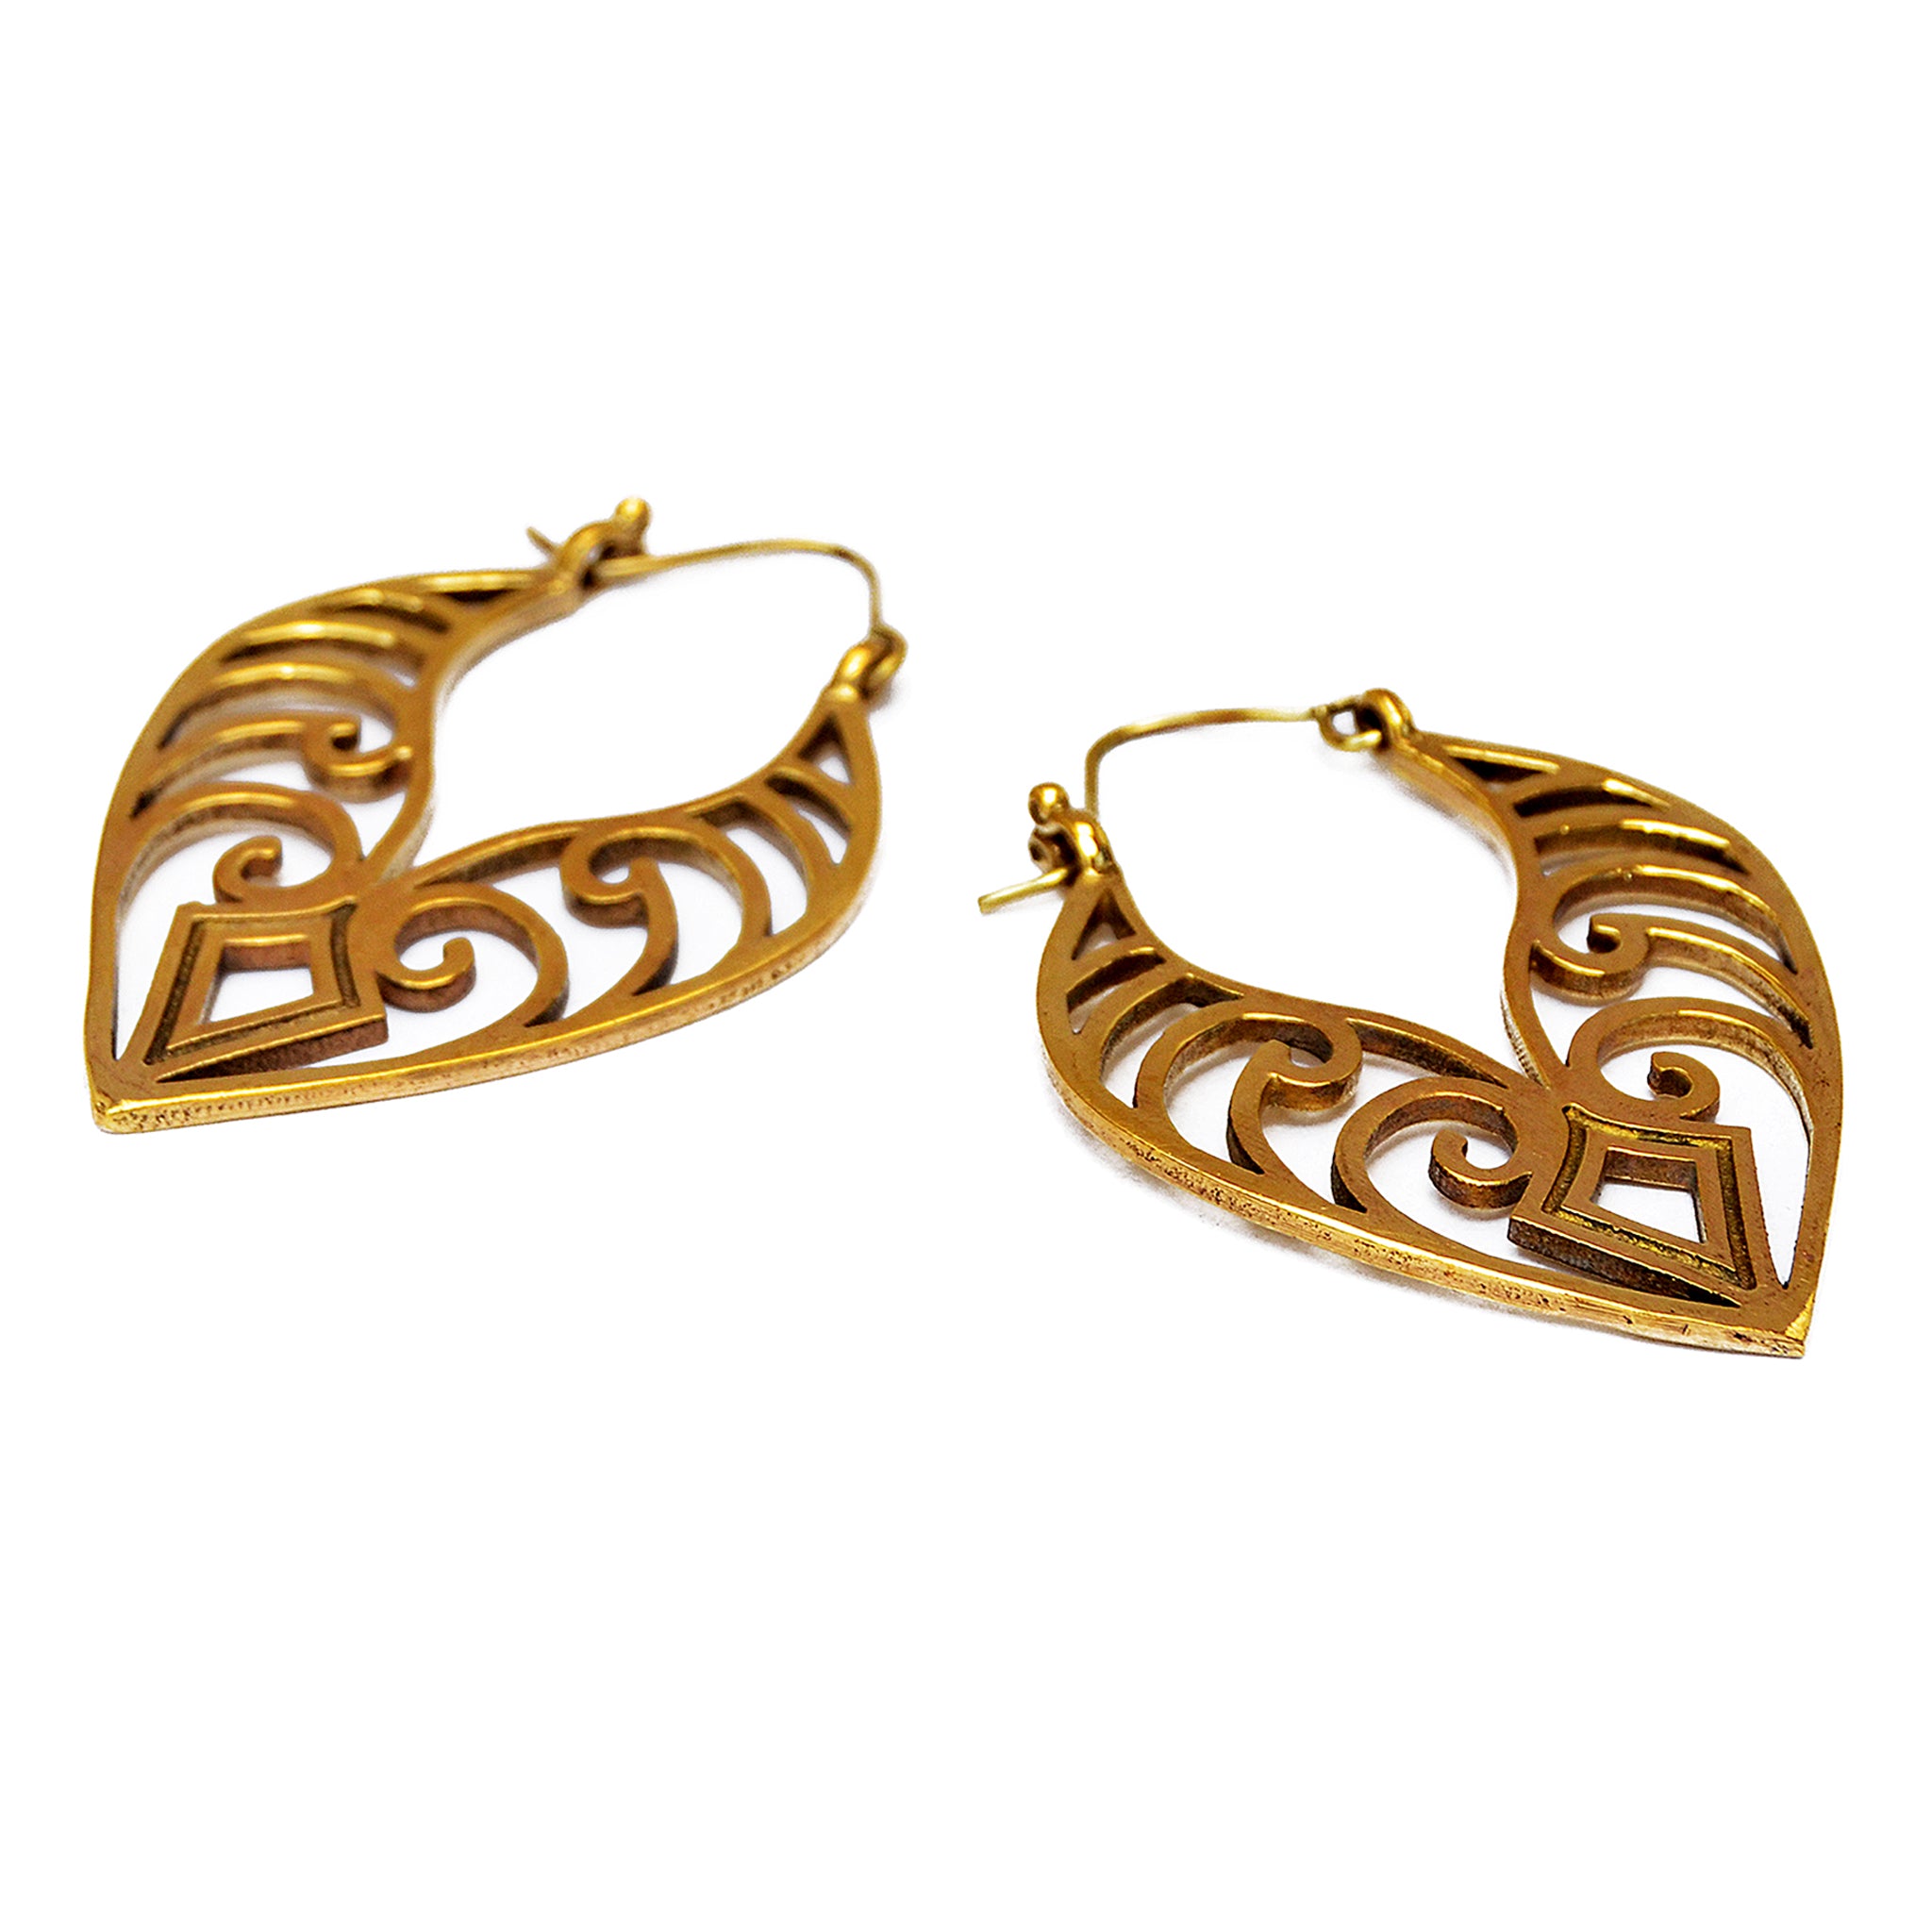 Brass maori earrings